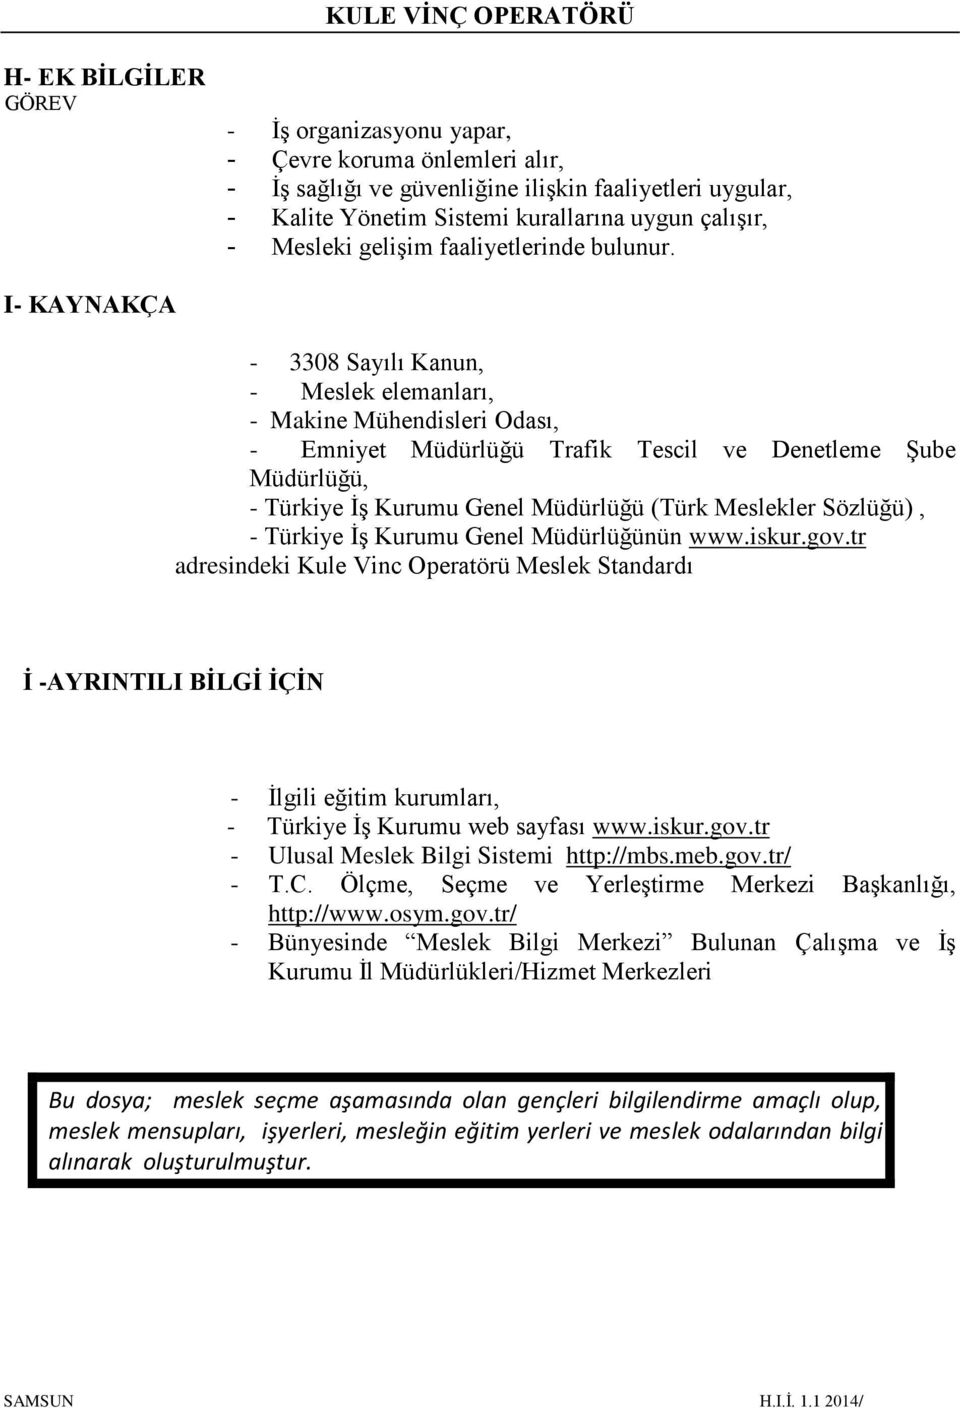 I- KAYNAKÇA - 3308 Sayılı Kanun, - Meslek elemanları, - Makine Mühendisleri Odası, - Emniyet Müdürlüğü Trafik Tescil ve Denetleme Şube Müdürlüğü, - Türkiye İş Kurumu Genel Müdürlüğü (Türk Meslekler